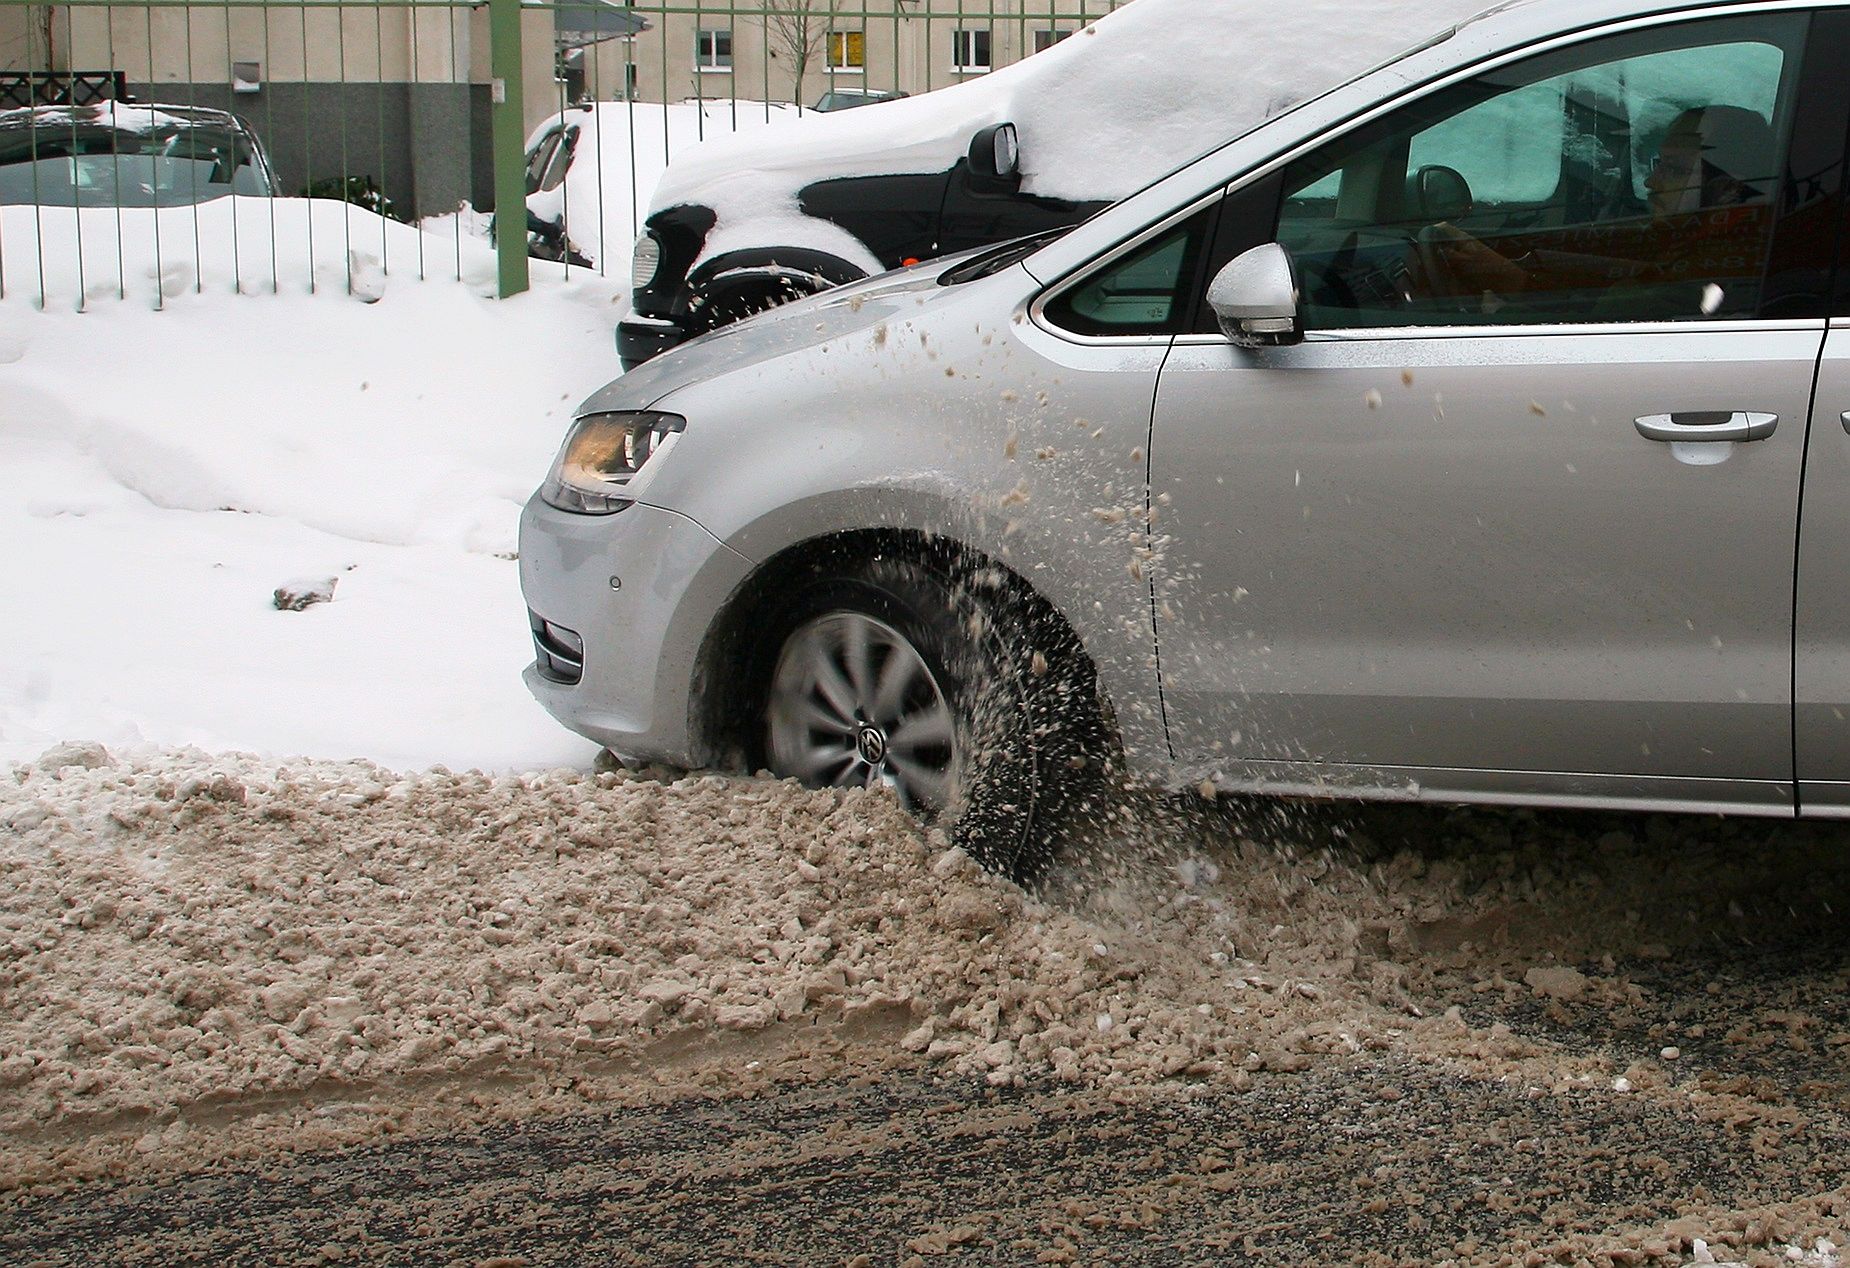 Jak Wyjechać Autem Z Zaspy? Co Zrobić, Gdy Samochód Utknie W Śniegu?